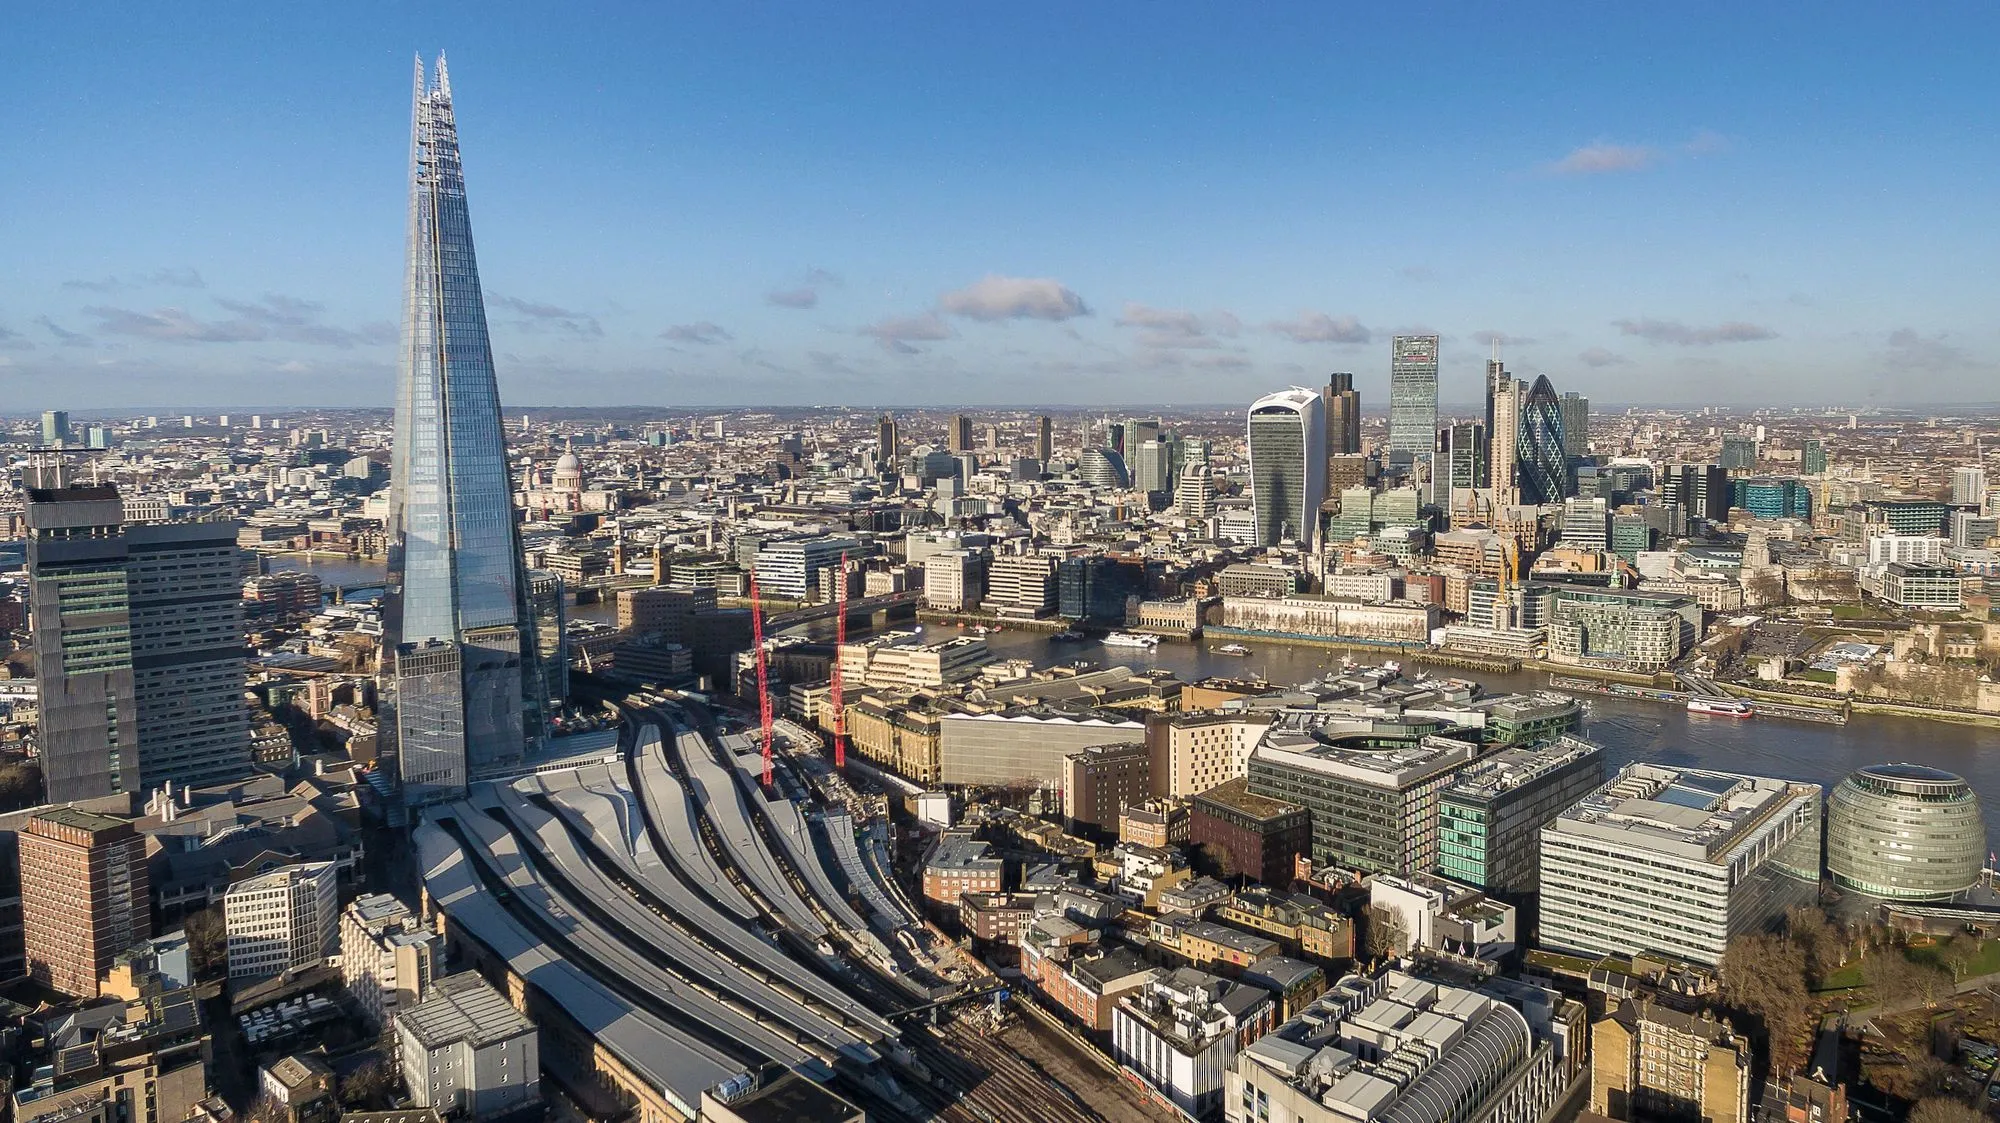 « The Shard », nouveau symbole de la puissance de Londres, a été inaugurée en 2013 sur la rive Sud de la Tamise. Cette tour fait face au quartier d'affaires de la City.